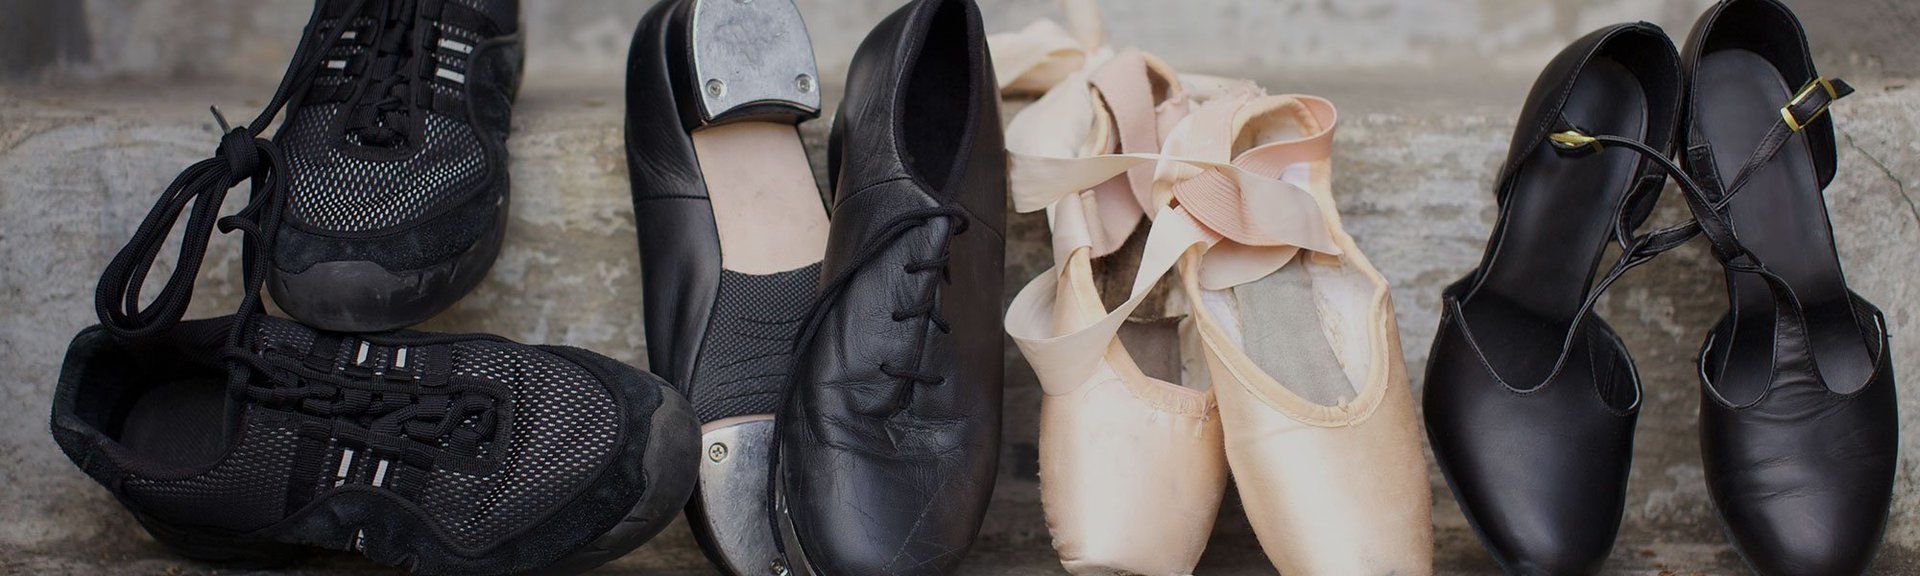 Dance Footwear